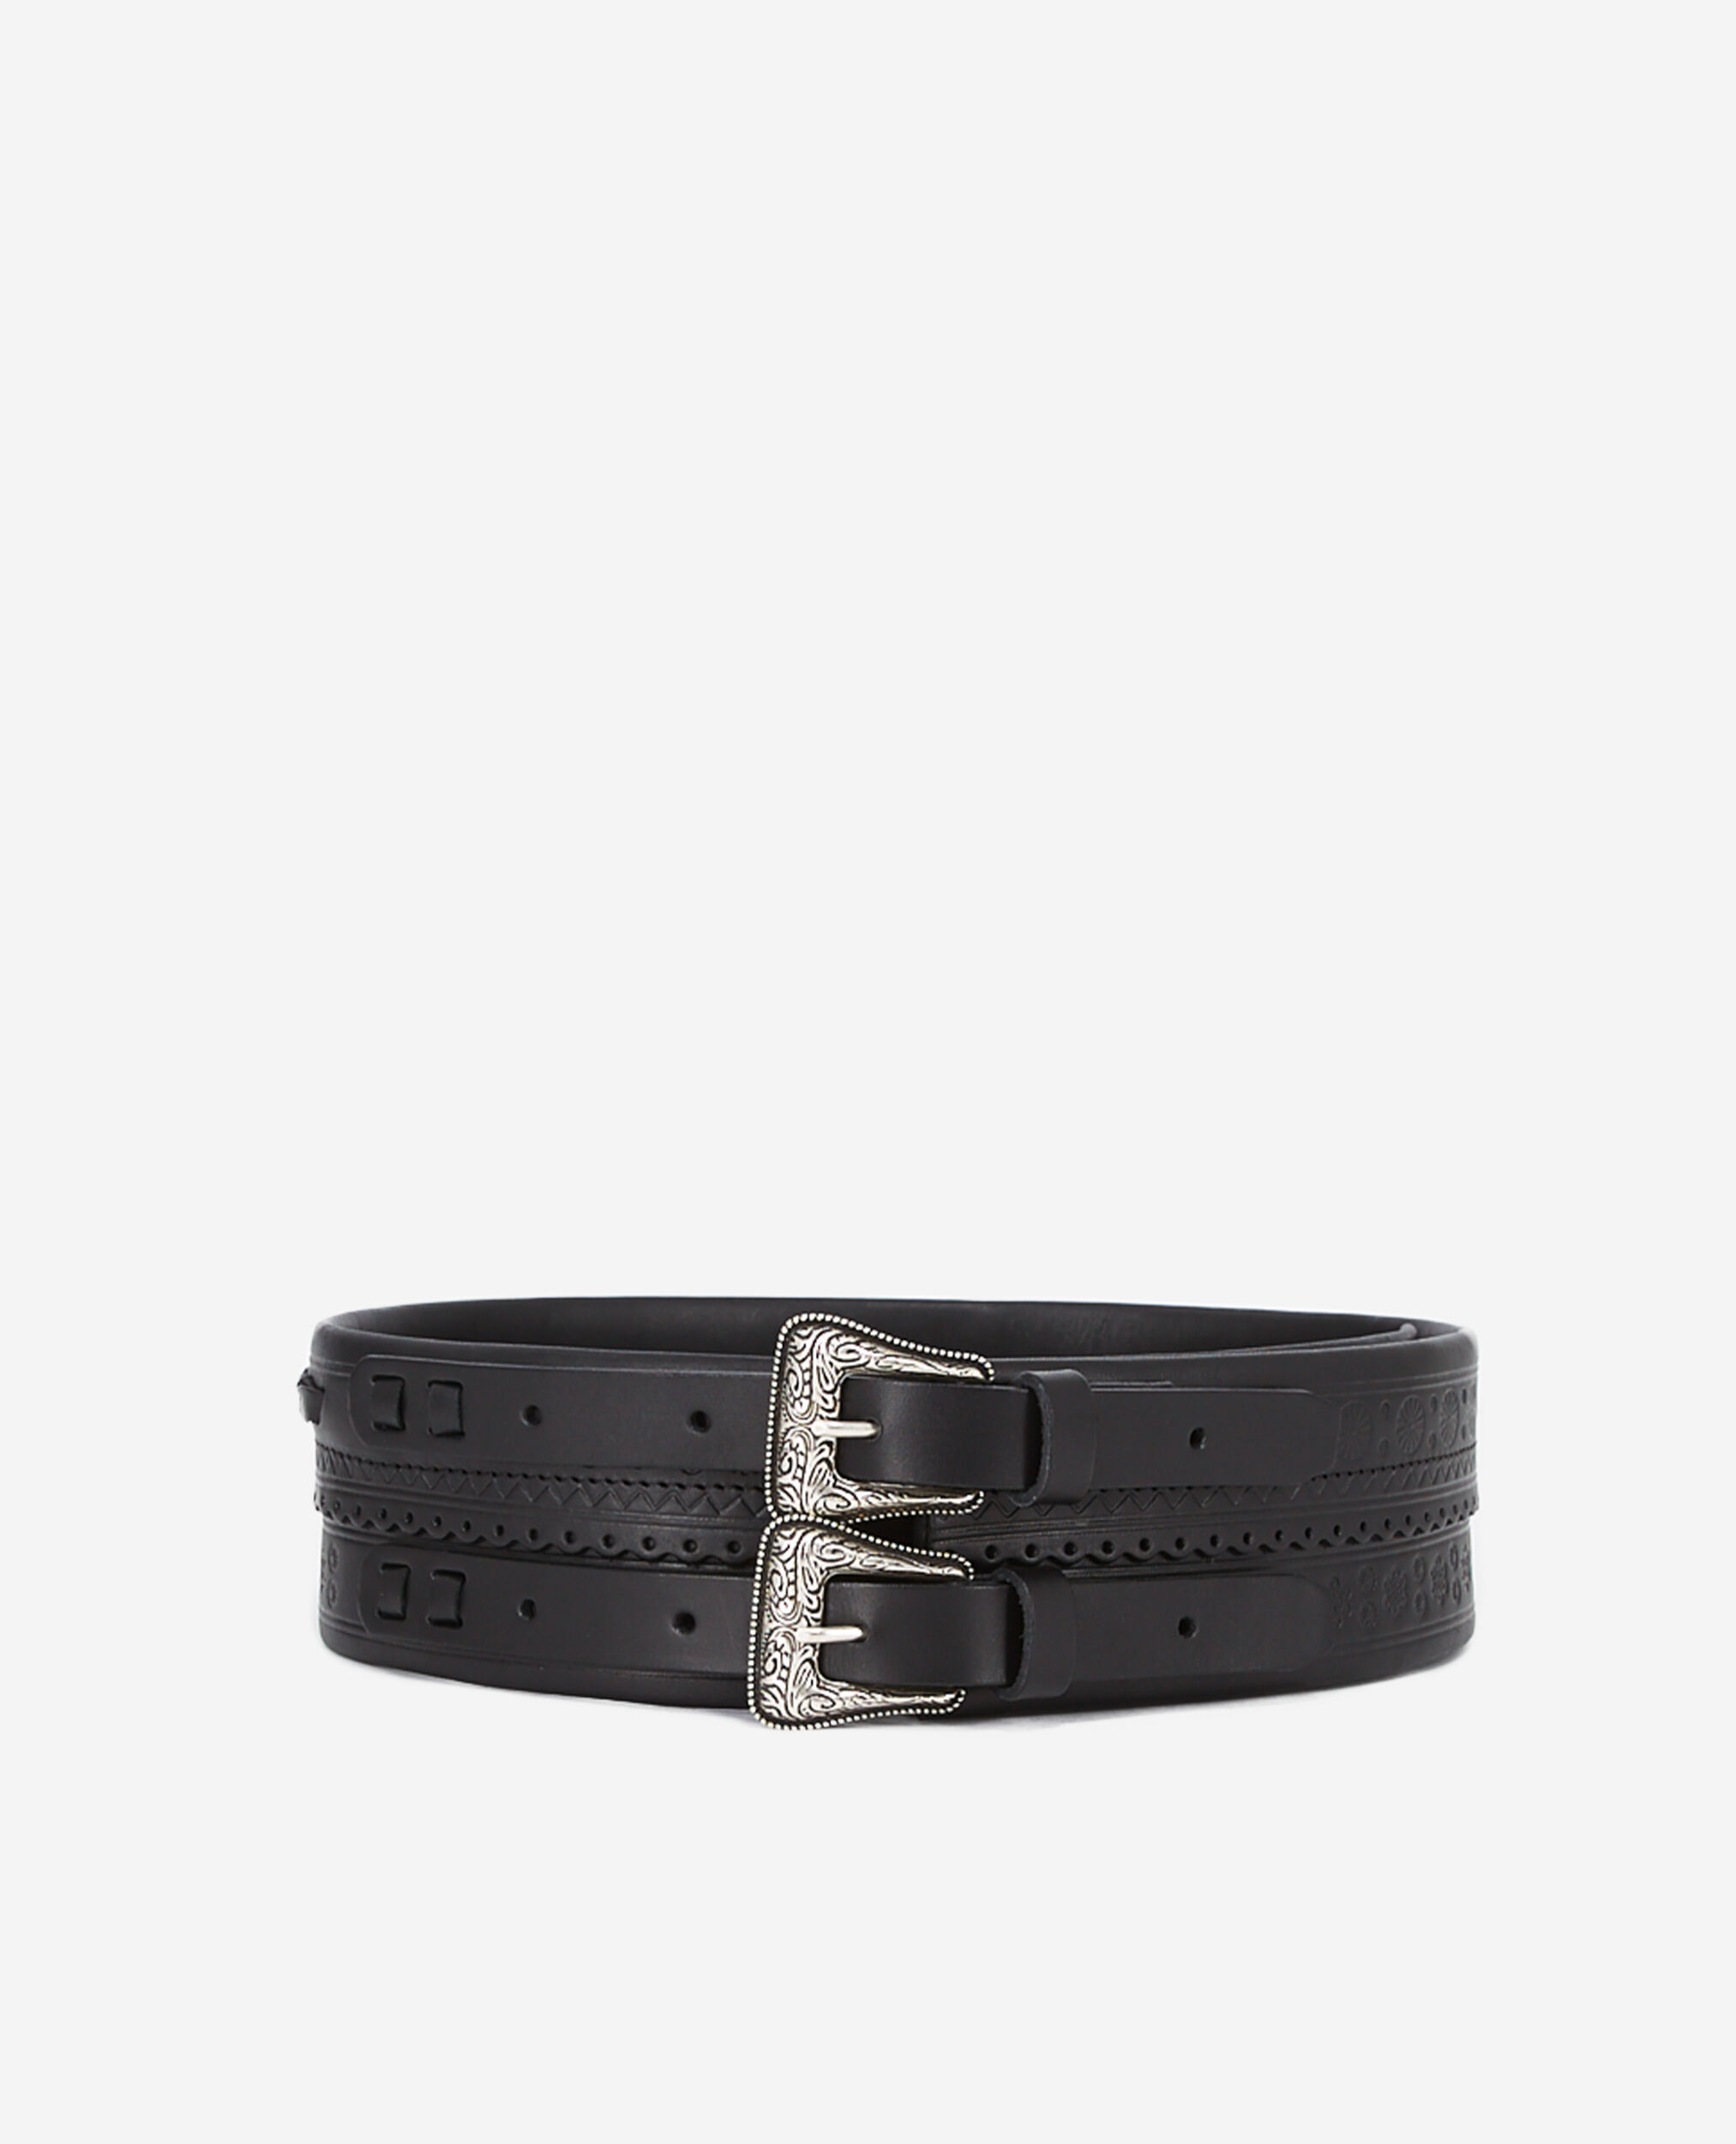 Cinturón negro ancho piel doble hebilla, BLACK, hi-res image number null